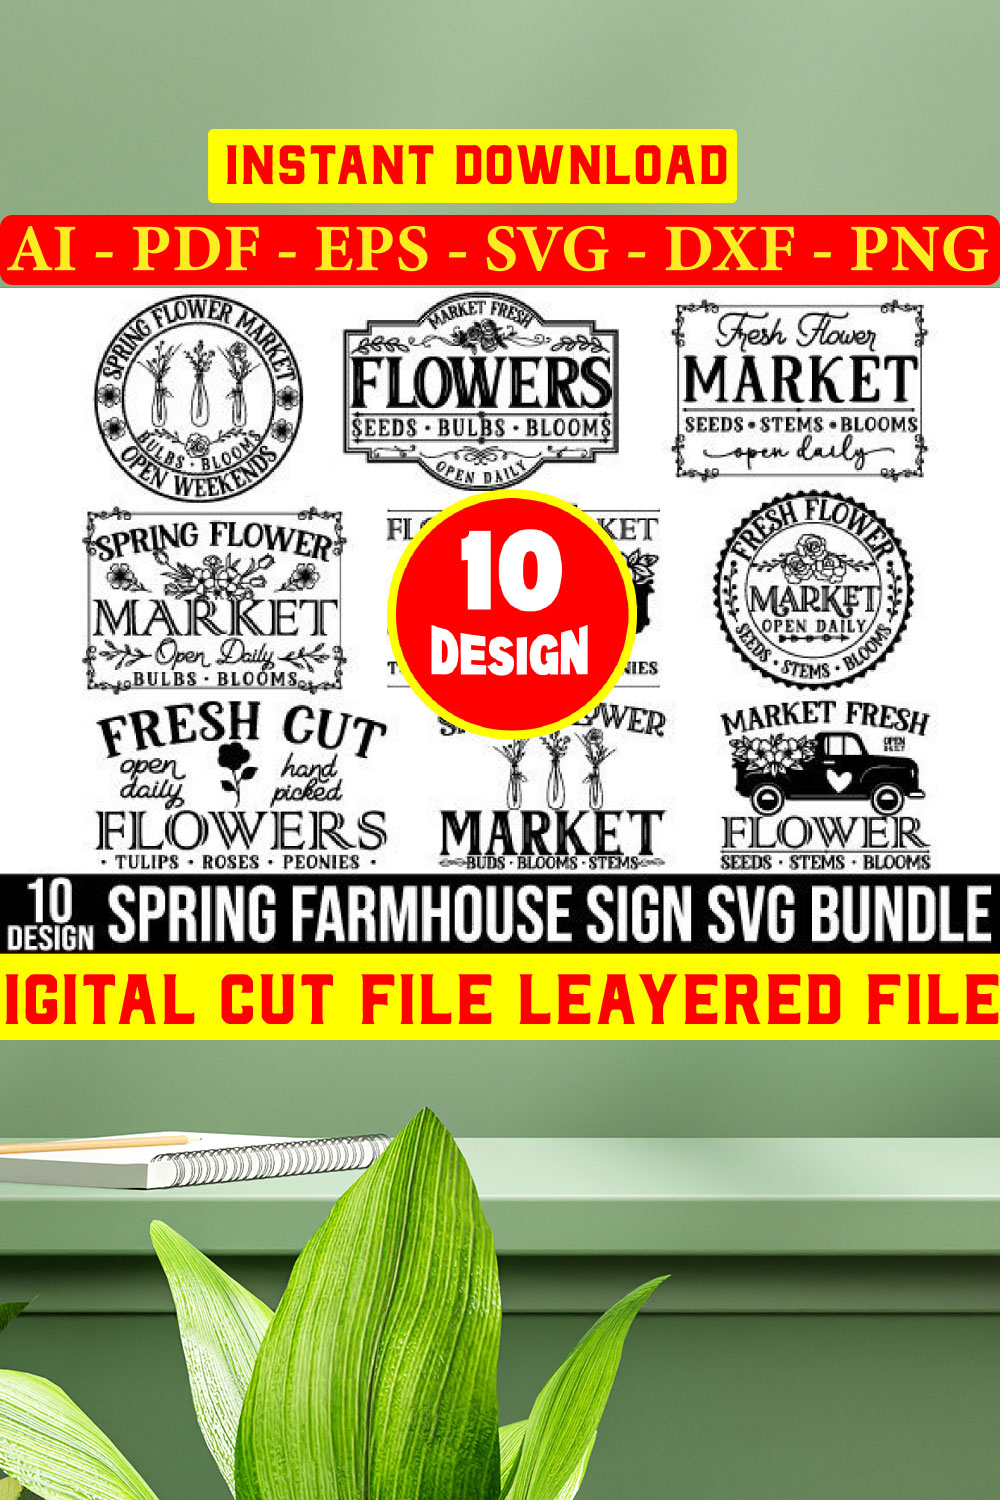 Spring Farmhouse Fign T-shirt Bundle pinterest preview image.